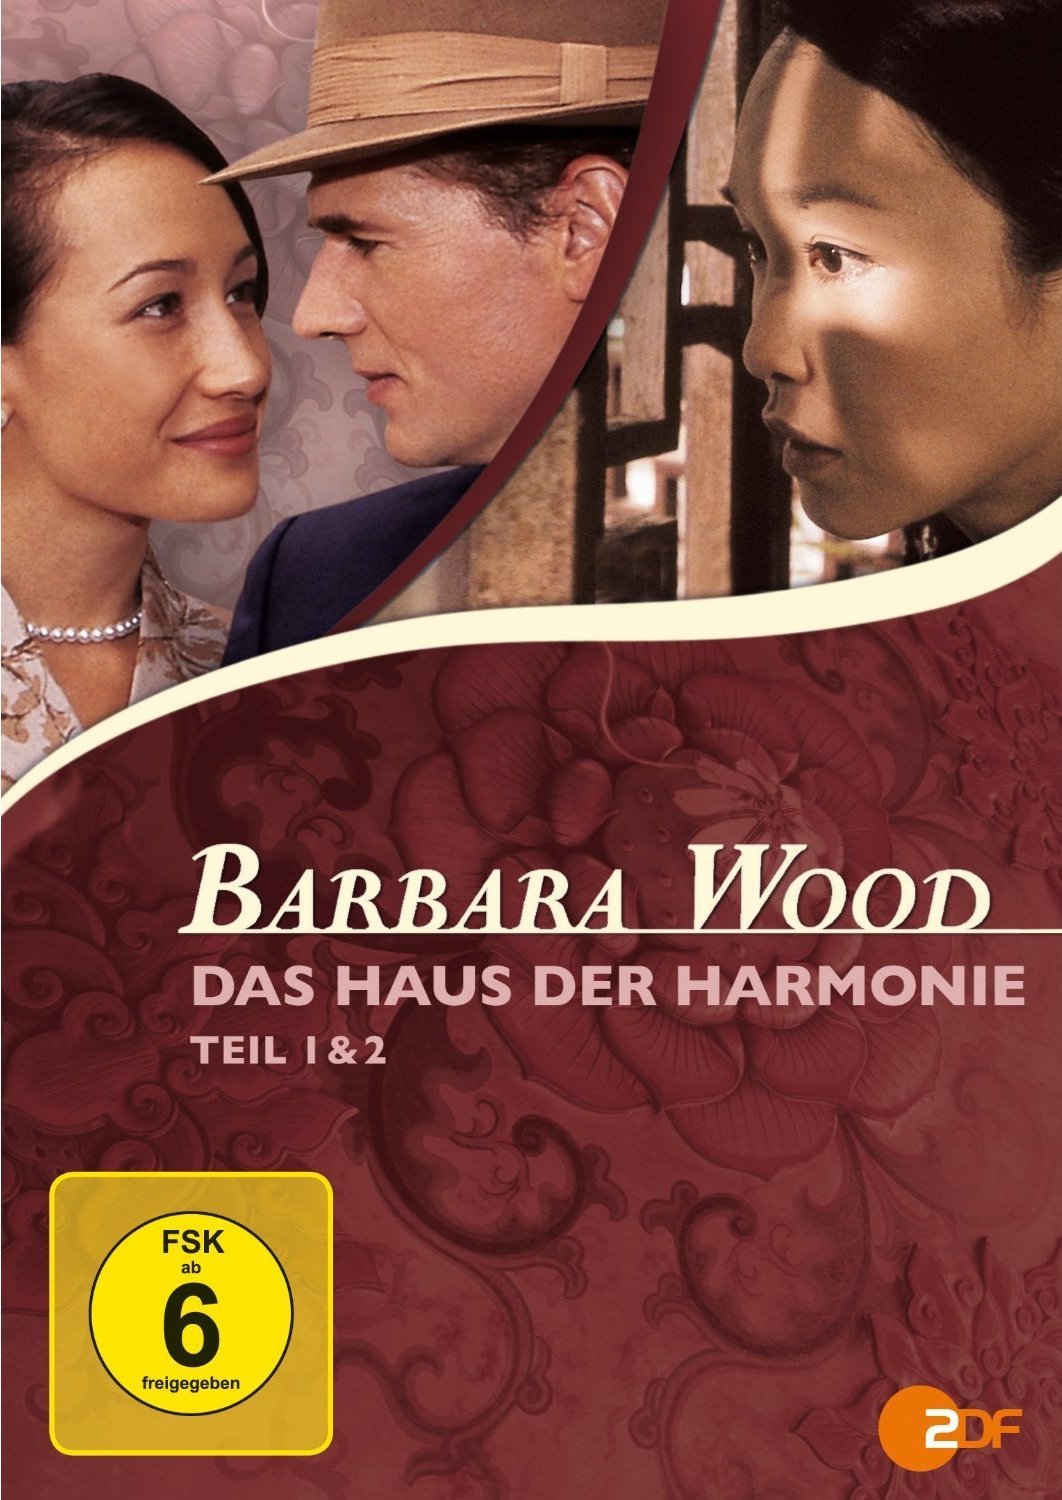 Széttört szívek háza / Barbara Wood Das Haus der